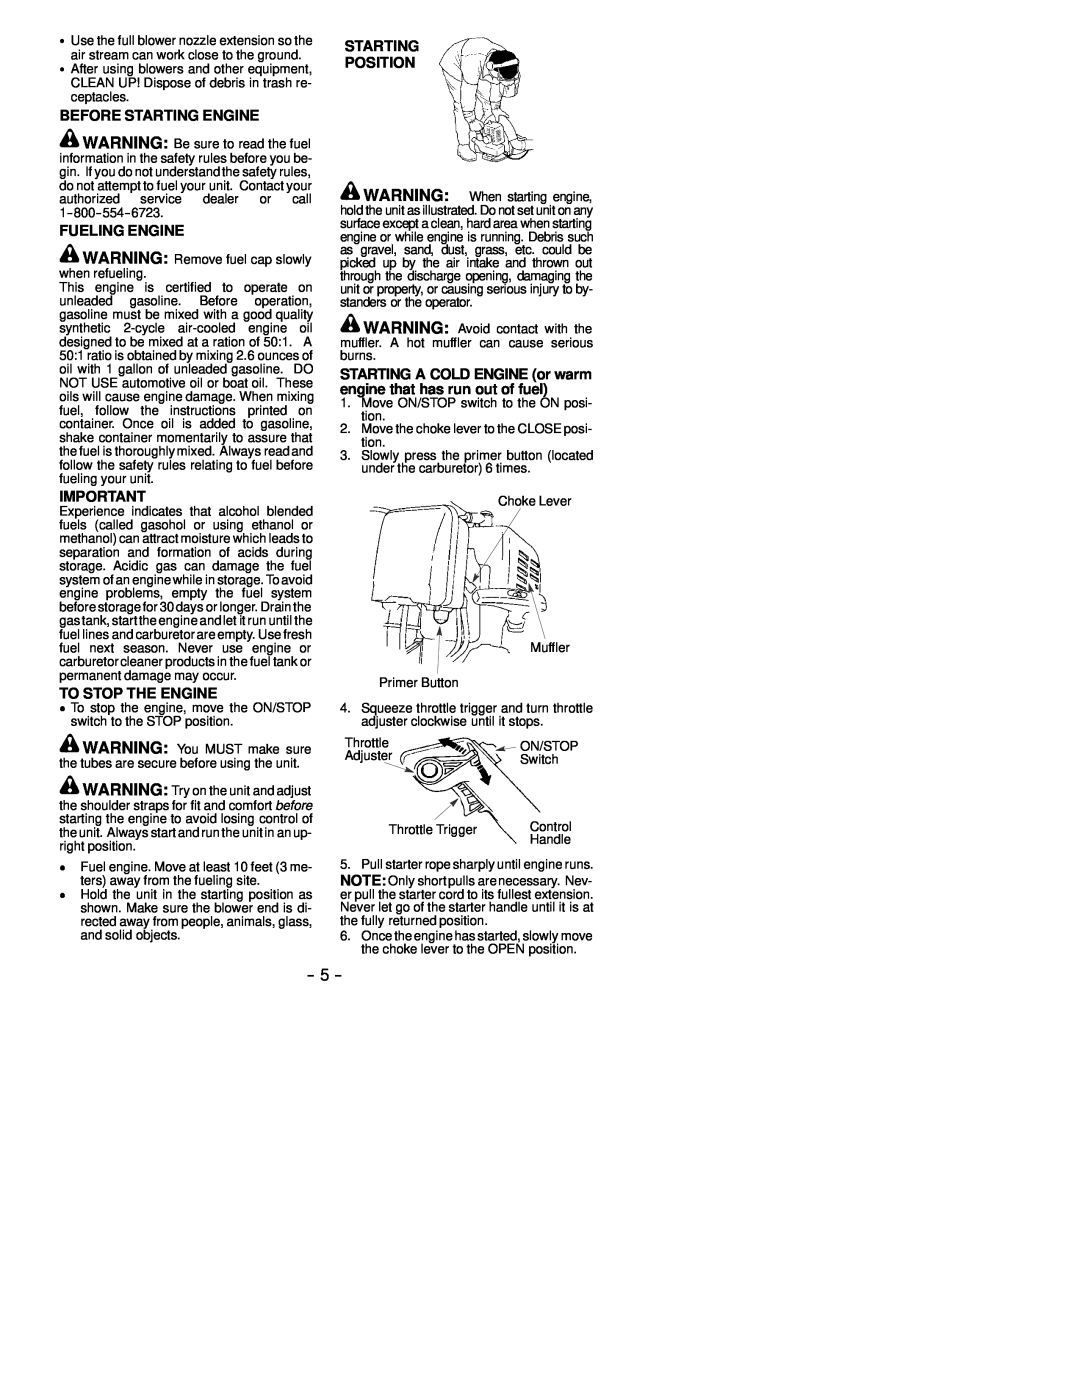 Poulan BP402 instruction manual Before Starting Engine, Fueling Engine, To Stop The Engine, Starting Position 